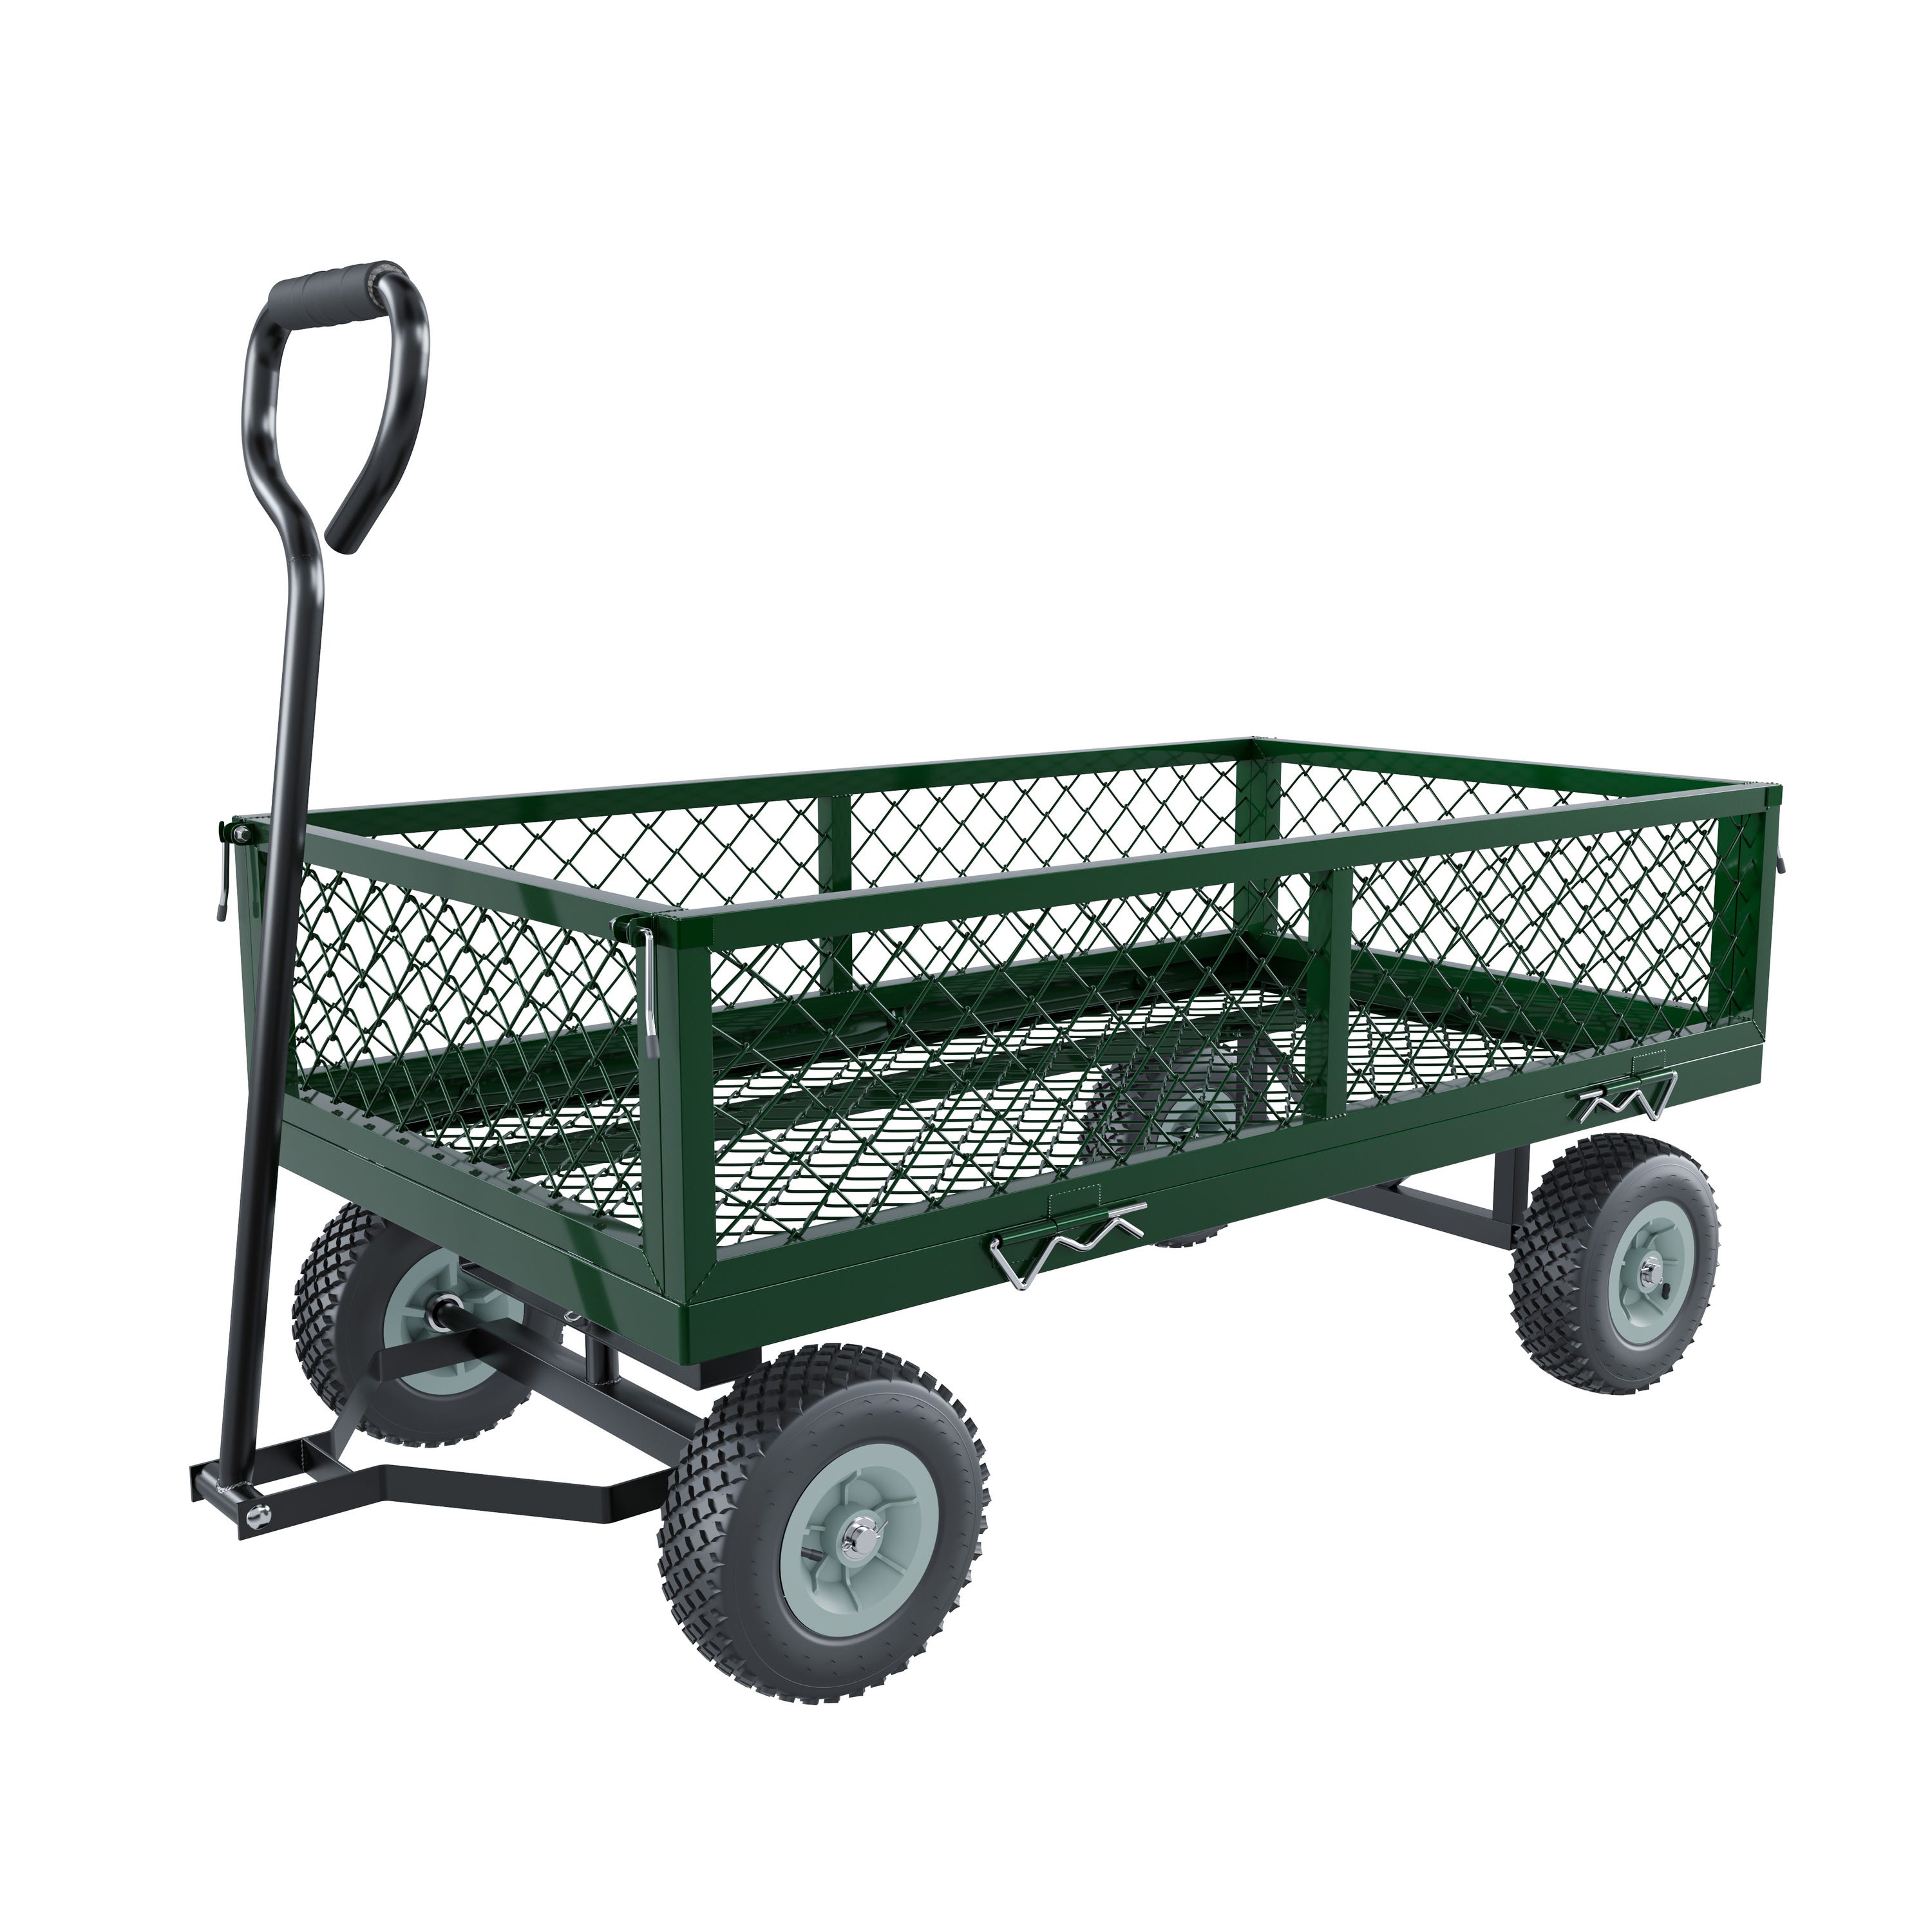 Carrello da giardino ribaltabile - 4 ruote pneumatiche - 550 kg - 150 L